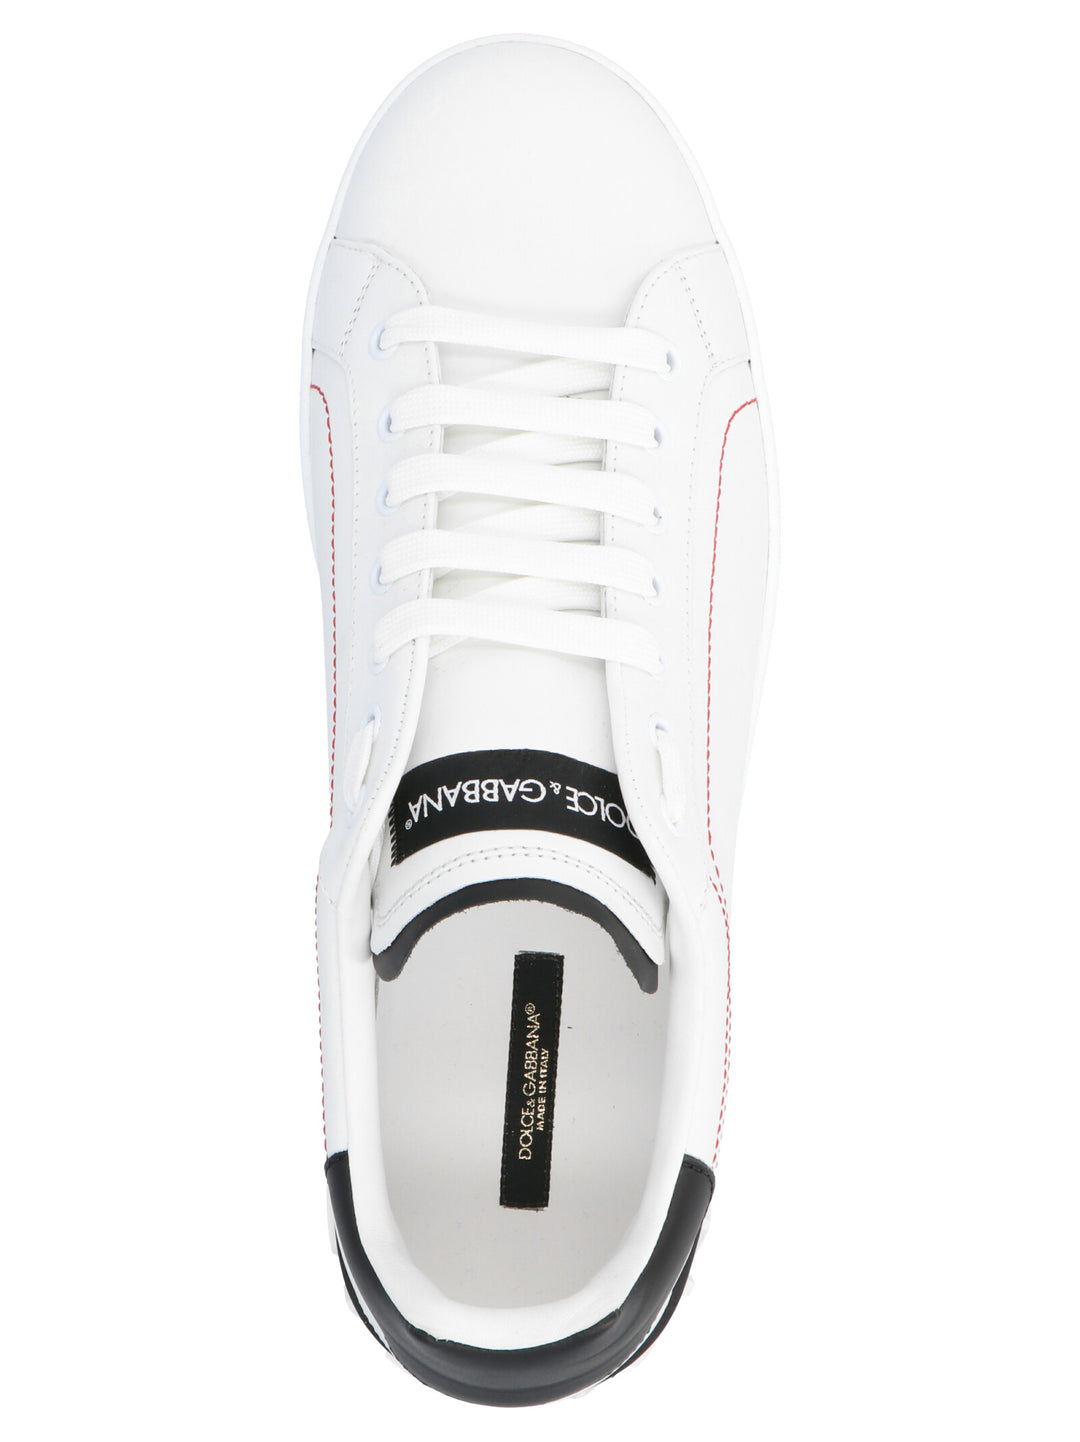 'Portofino' Sneakers Bianco/nero